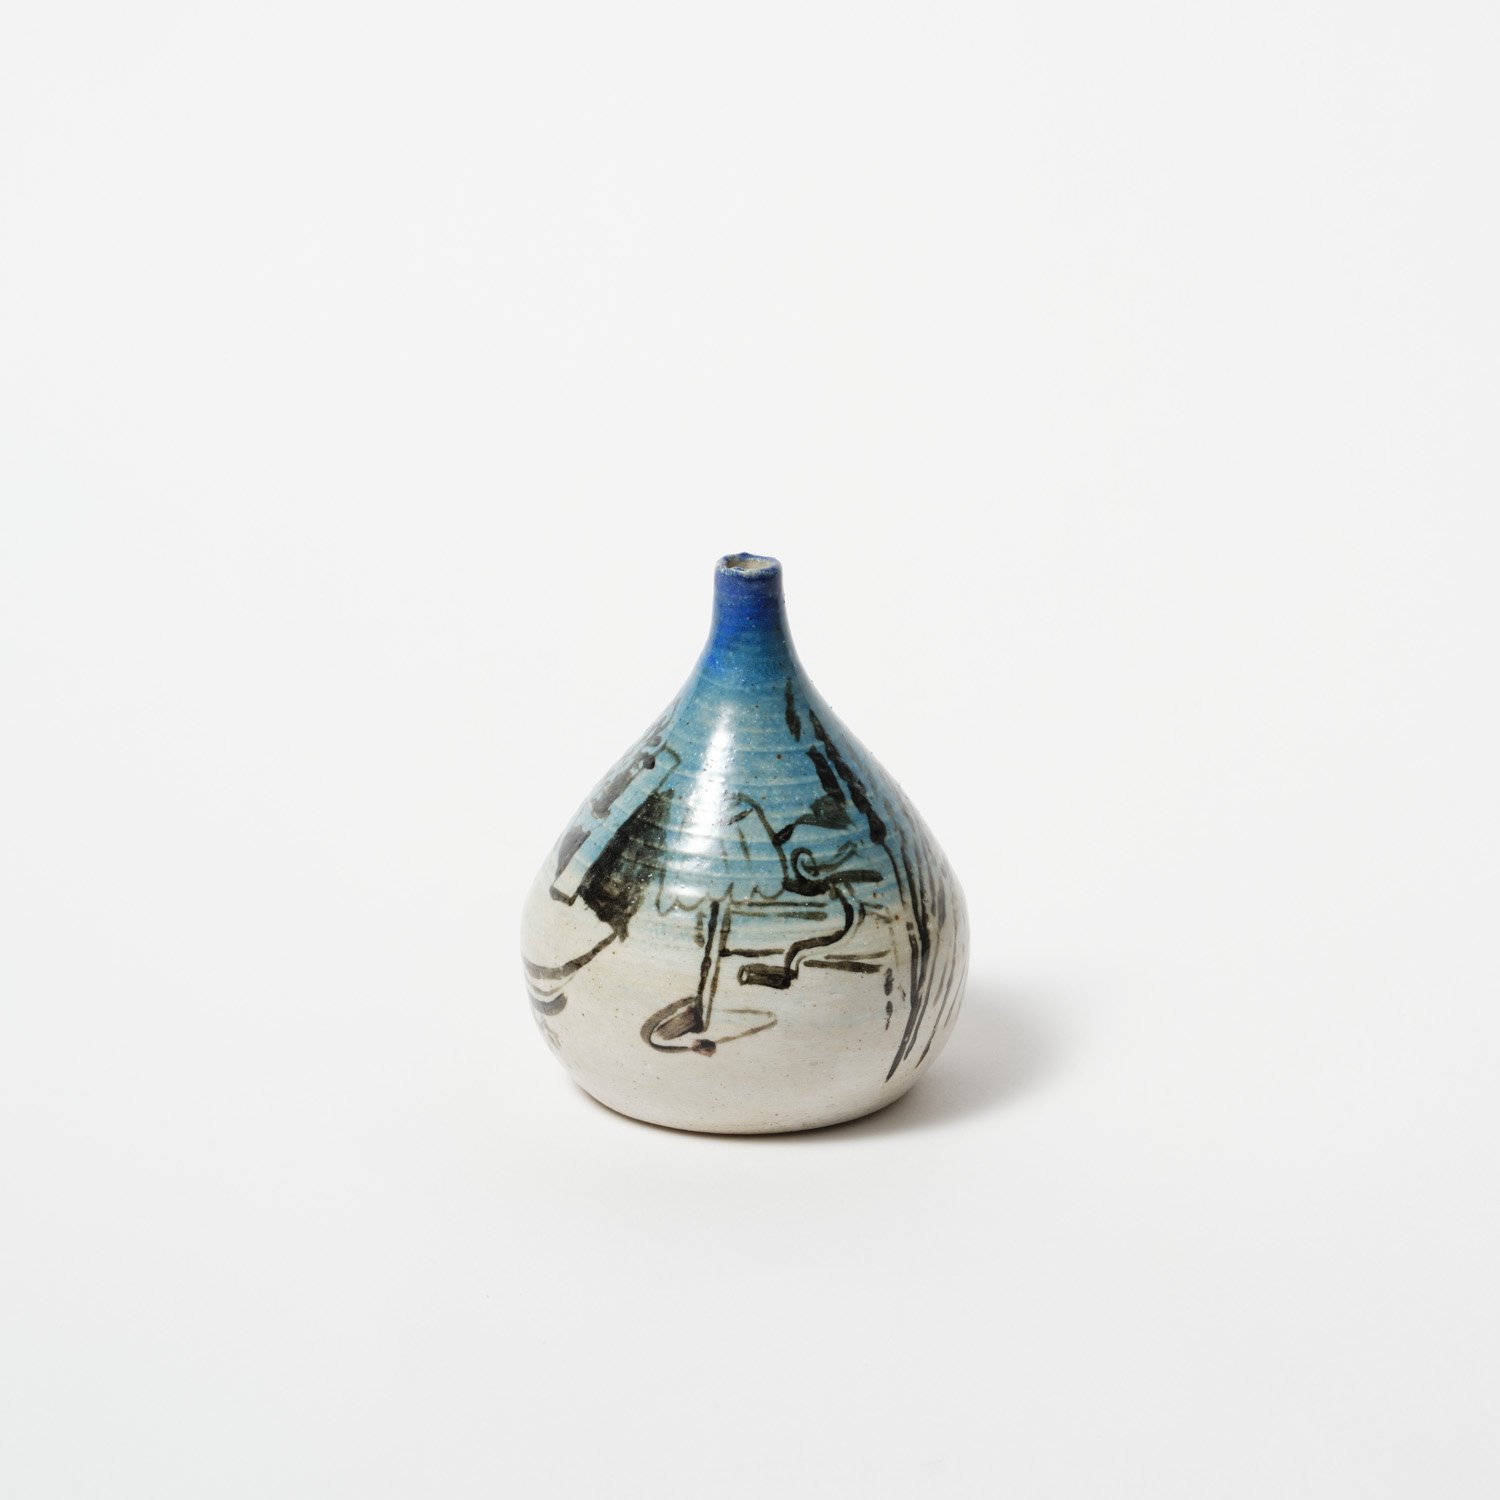 The Ocean Breathes Salty - Ceramic small Vase – 8cm x 12cm x 8cm $250